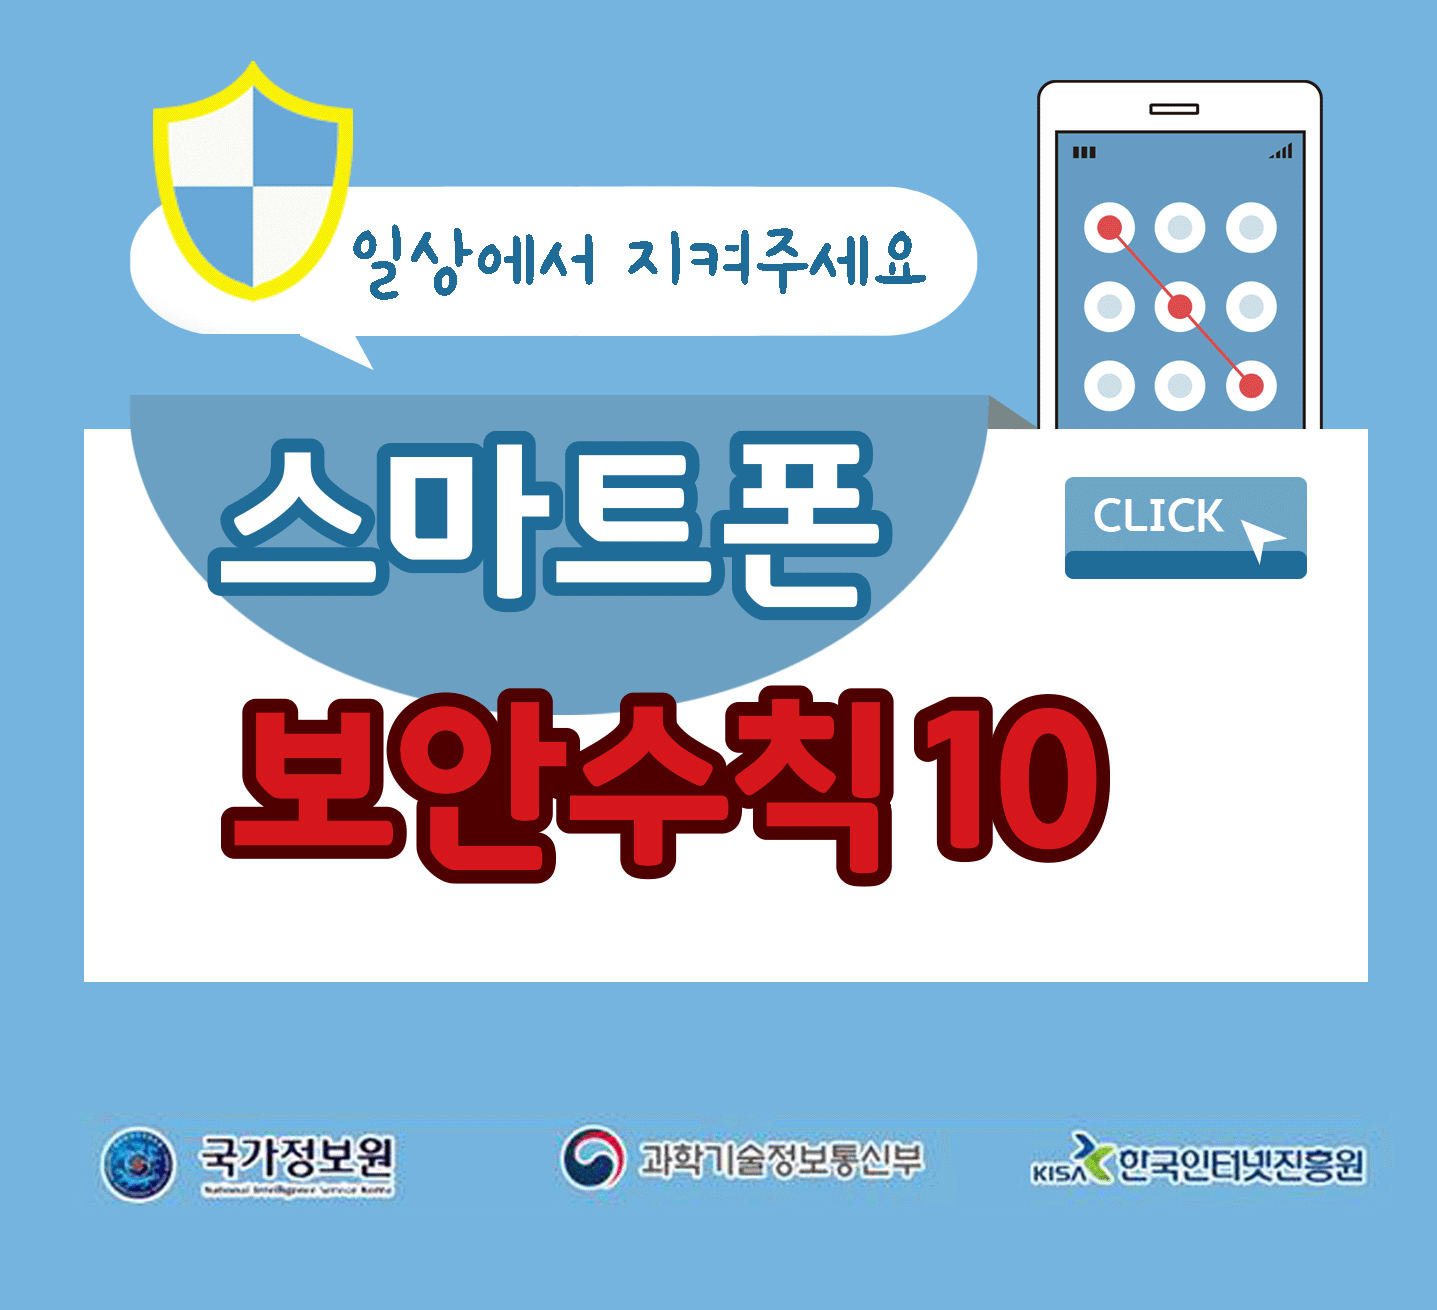 일상에서 지켜주세요
스마트폰 보안수칙 10 CLICK
국가정보원, 과학기술정보통신부, 한국인터넷진흥원;jsessionid=277DBE761302131558041F5360F85164